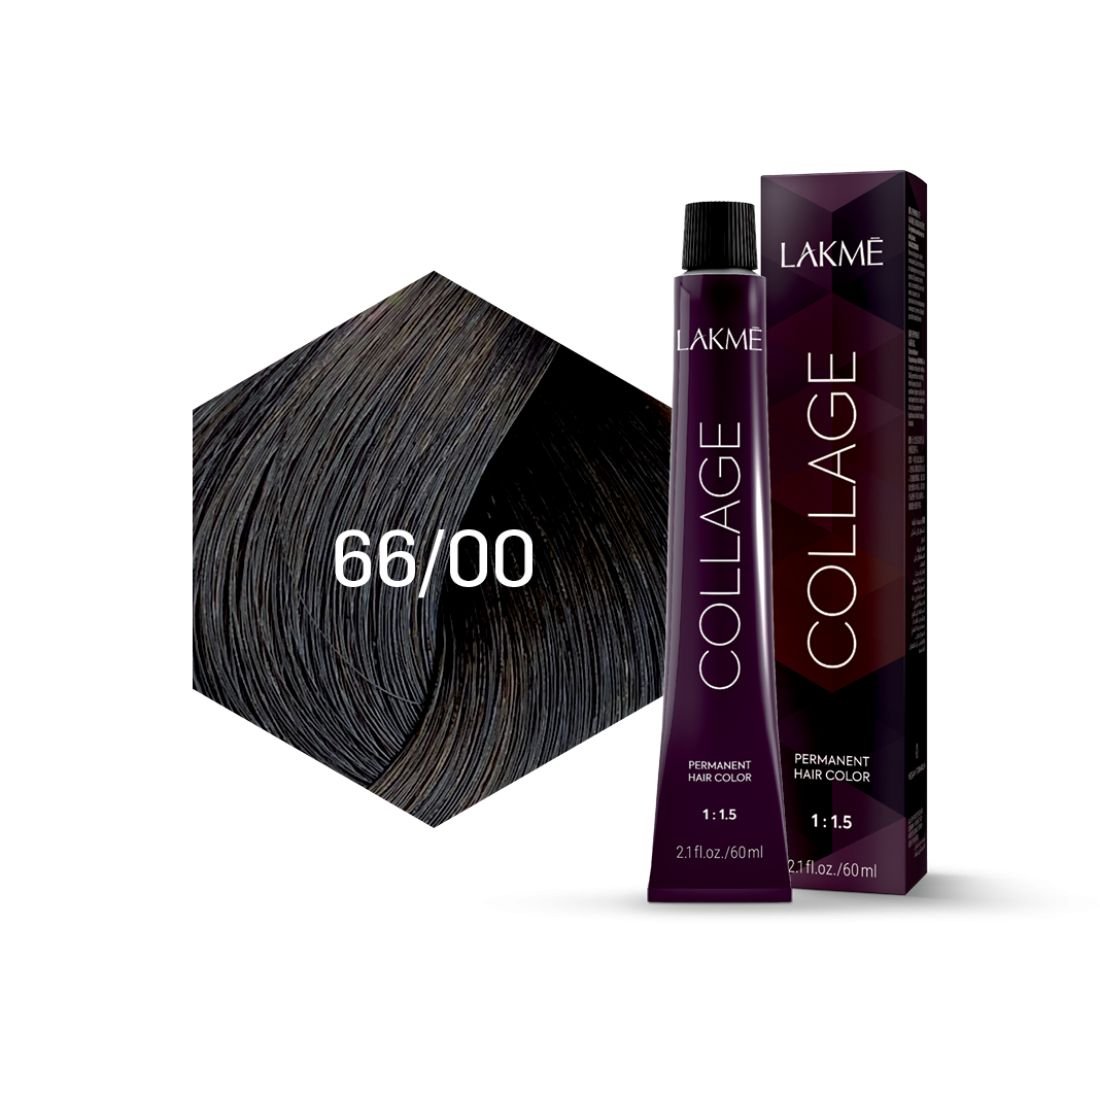 Крем-фарба для волосся Lakme Collage відтінок 66/00 (Інтенсивний темно-русявий), 60 мл - фото 2